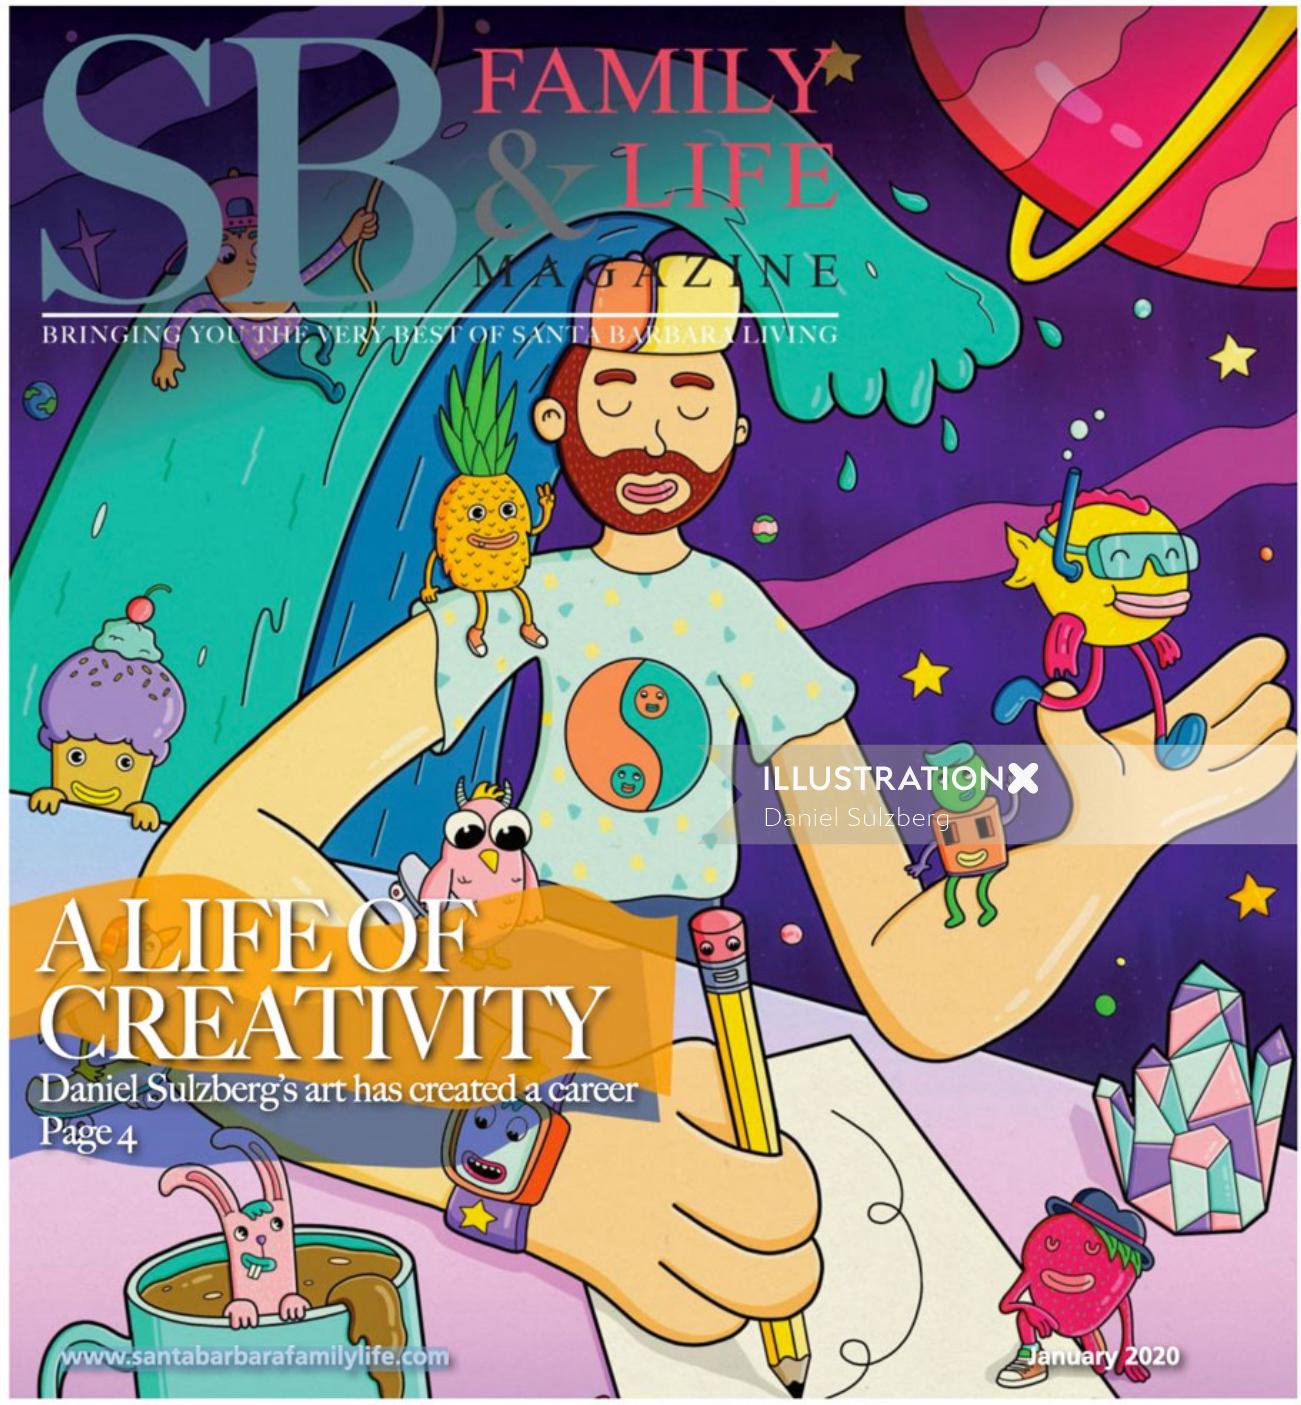 Santa Barbara Family and Life's cover celebrates creativity